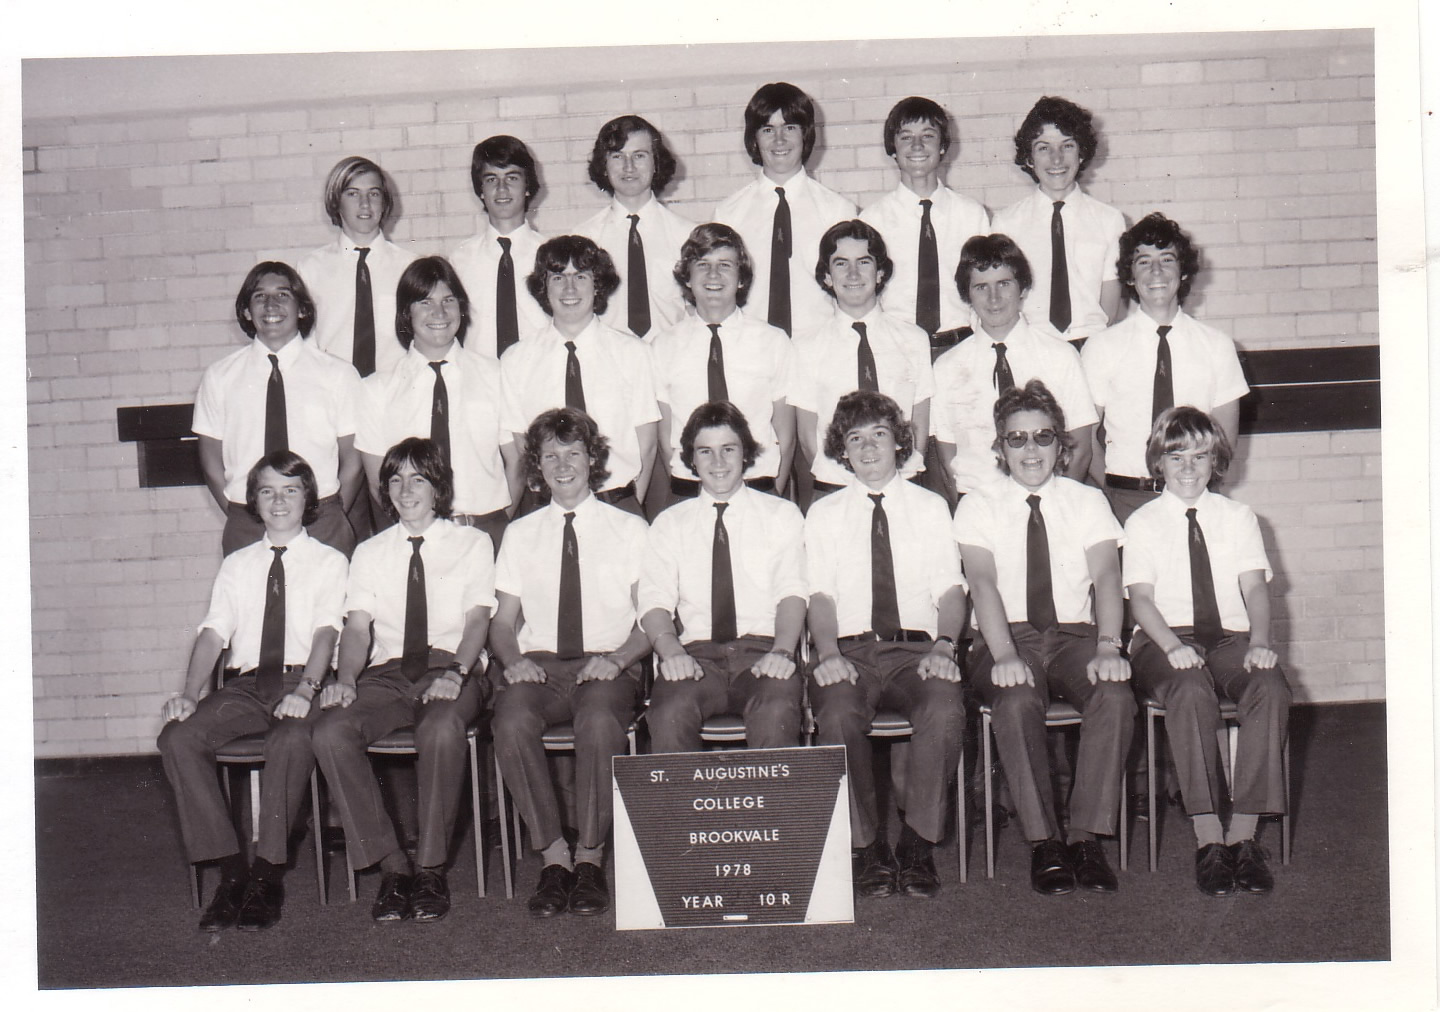 1978 - 10R class portrait